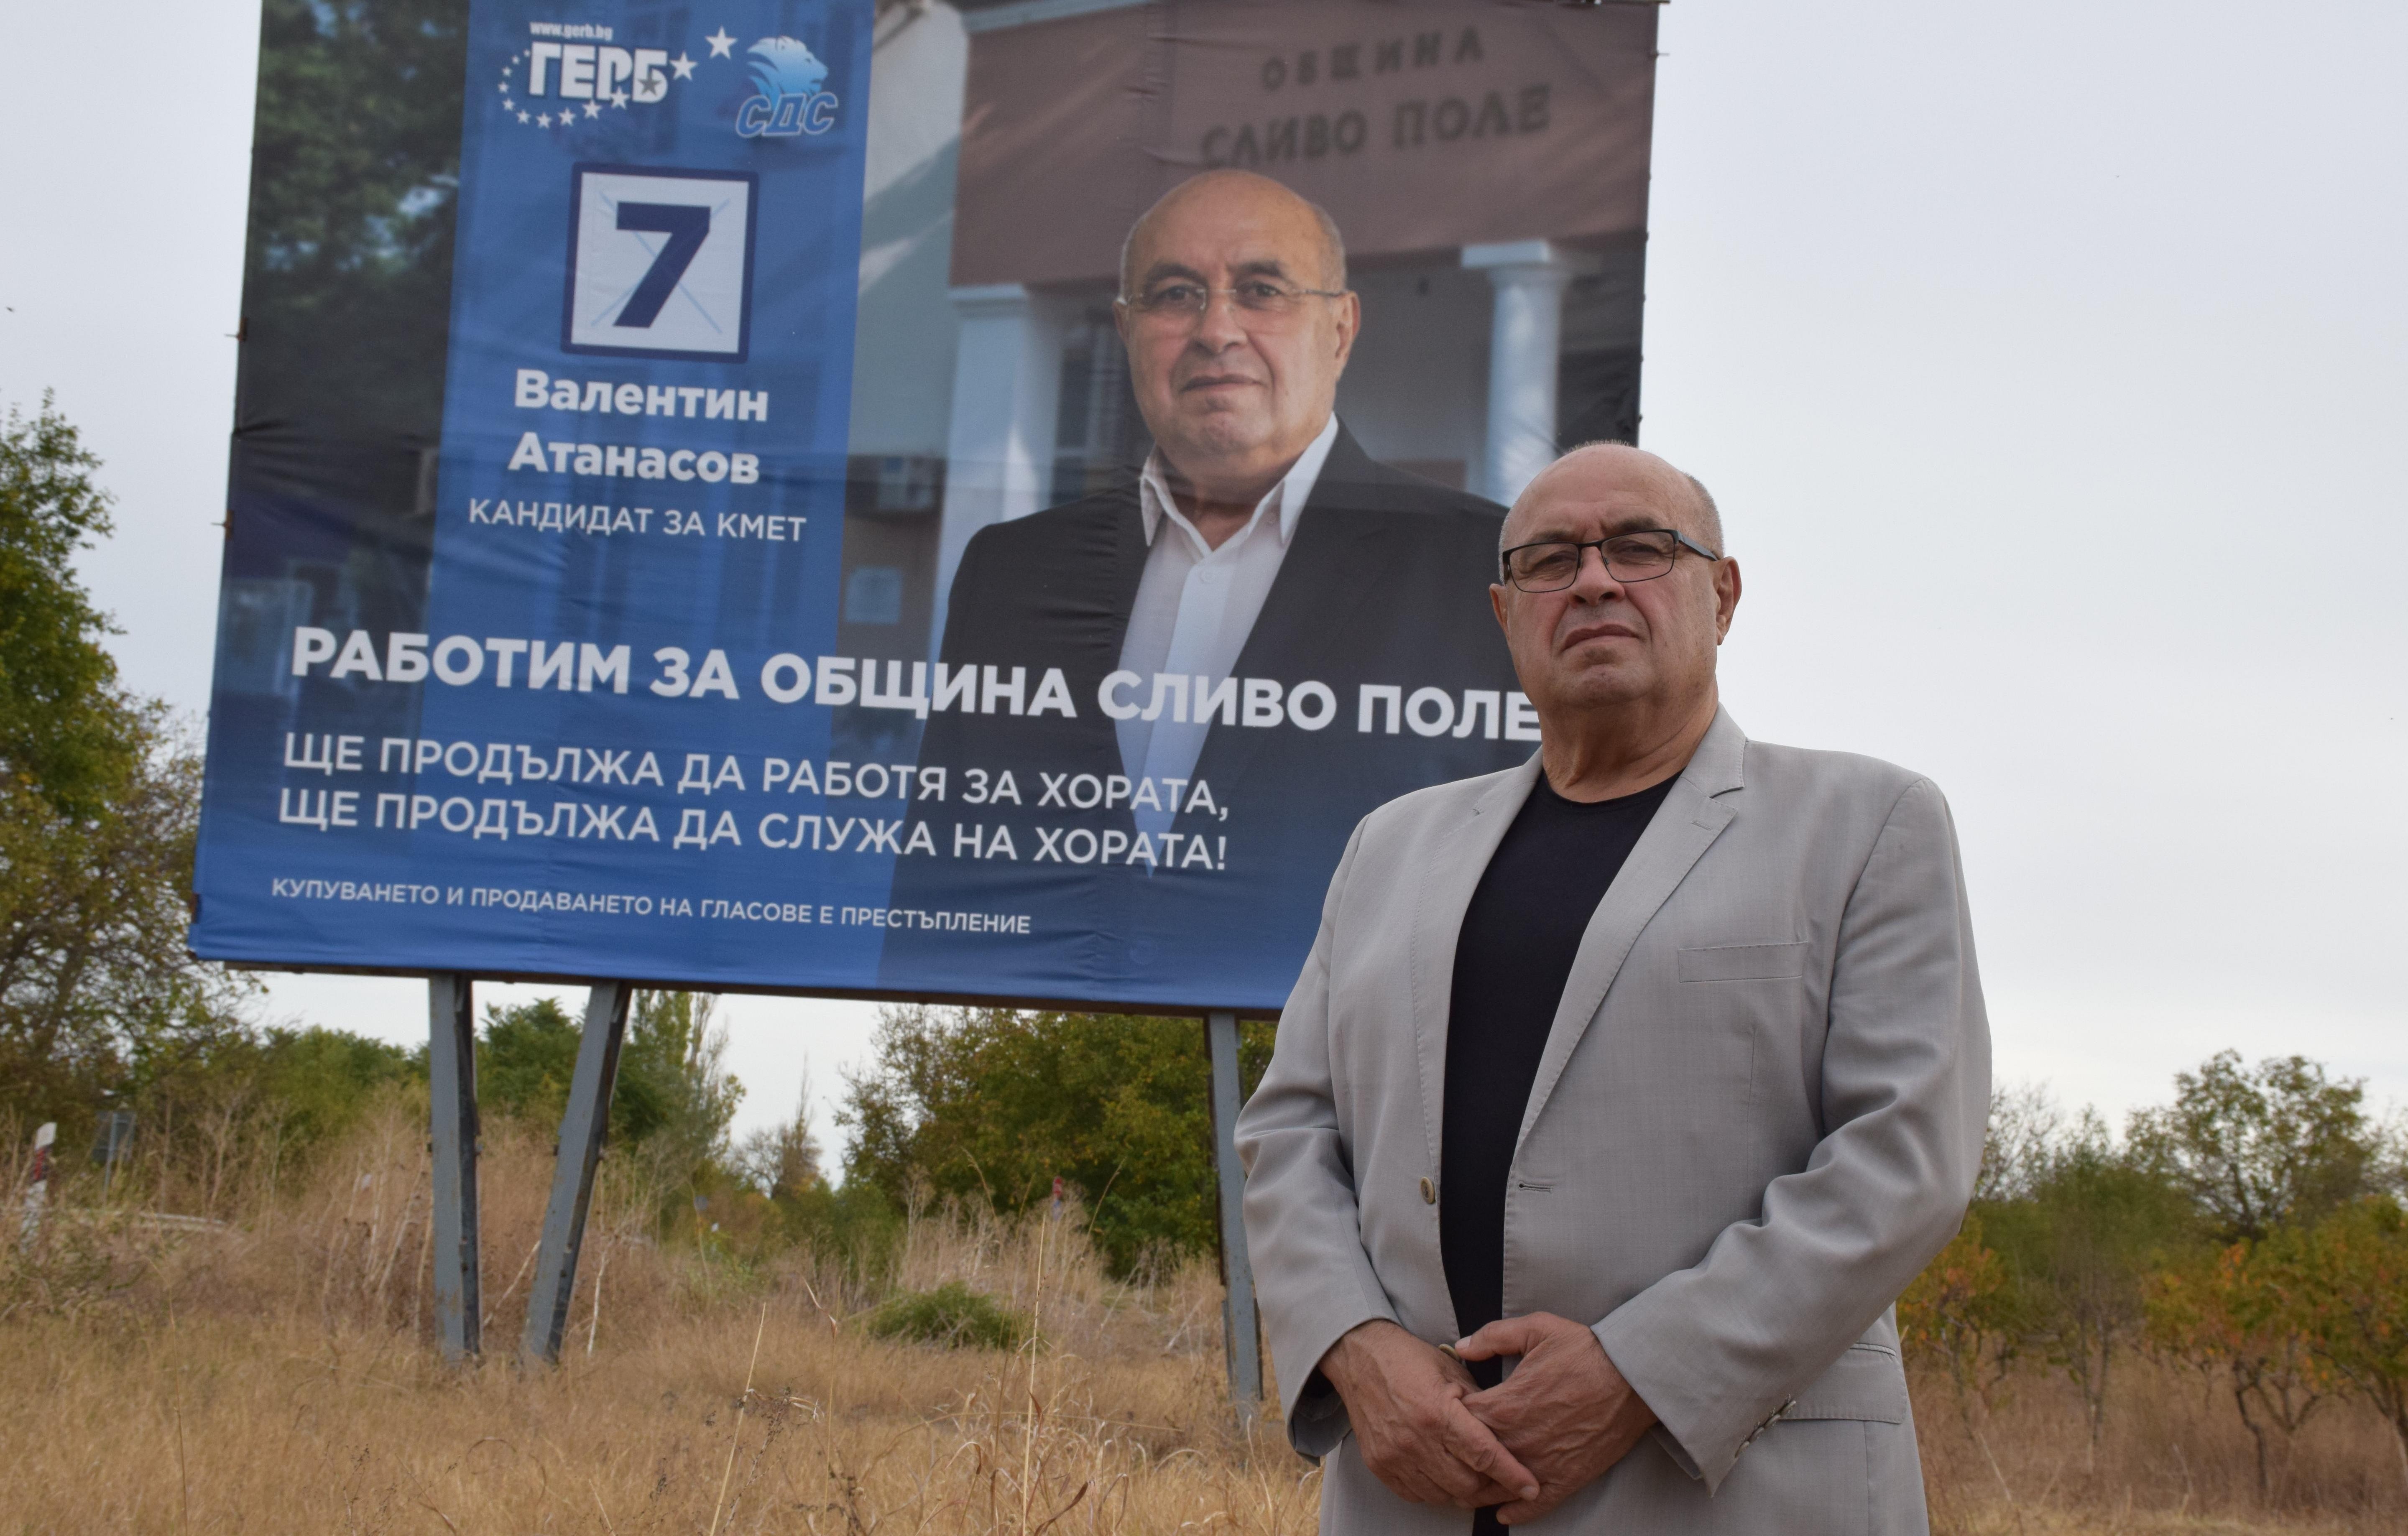 Кандидатът за кмет на Община Сливо поле Валентин Атанасов с обръщение към избирателите